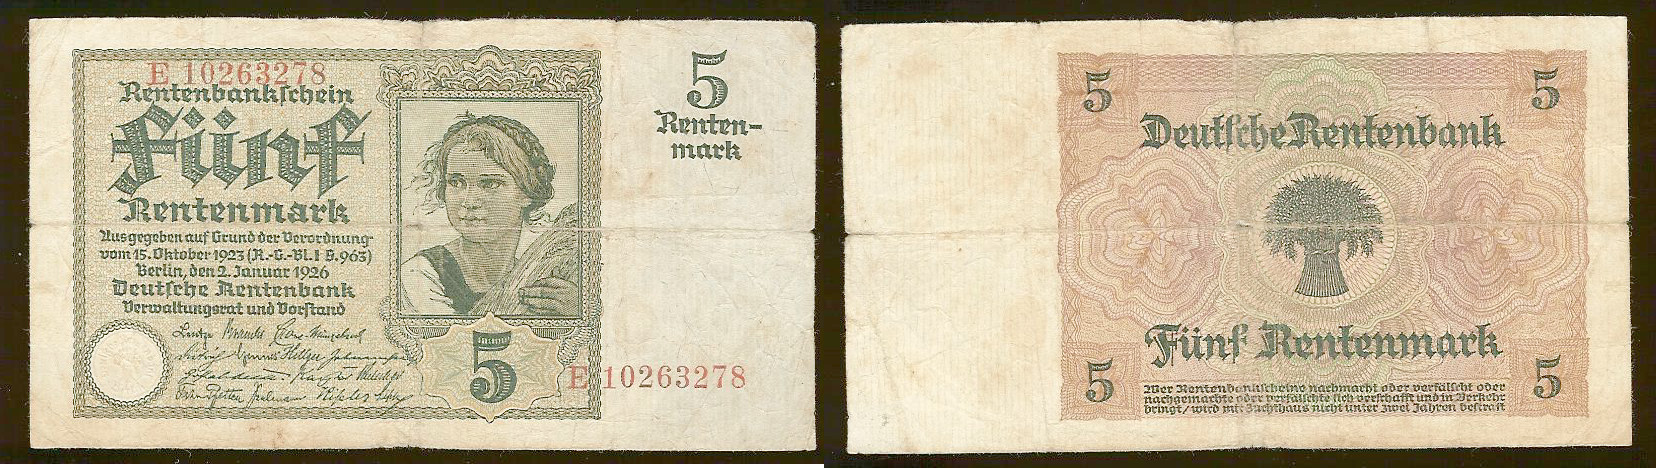 5 Rentenmark ALLEMAGNE 1926 P.169 TB-